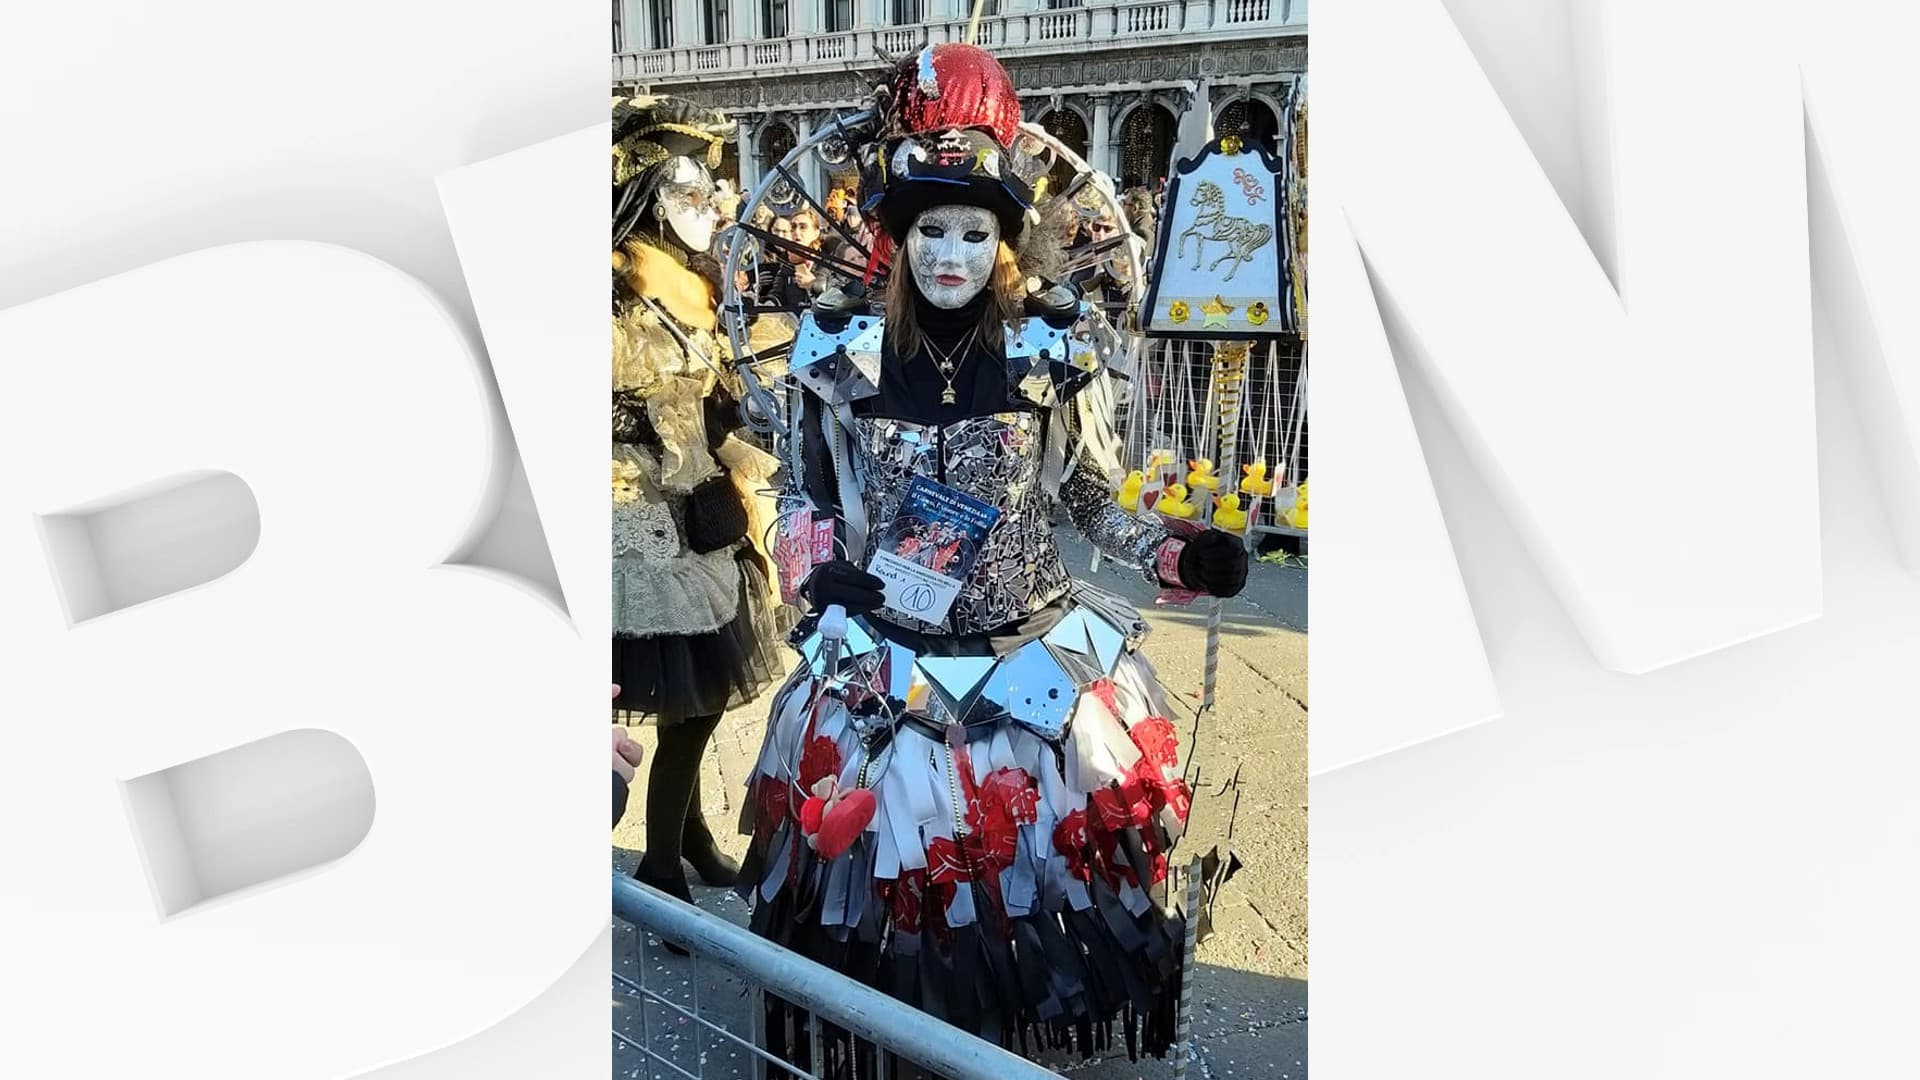 Carnaval de Venise : l'Estairoise Karen Duthoit remet en jeu son